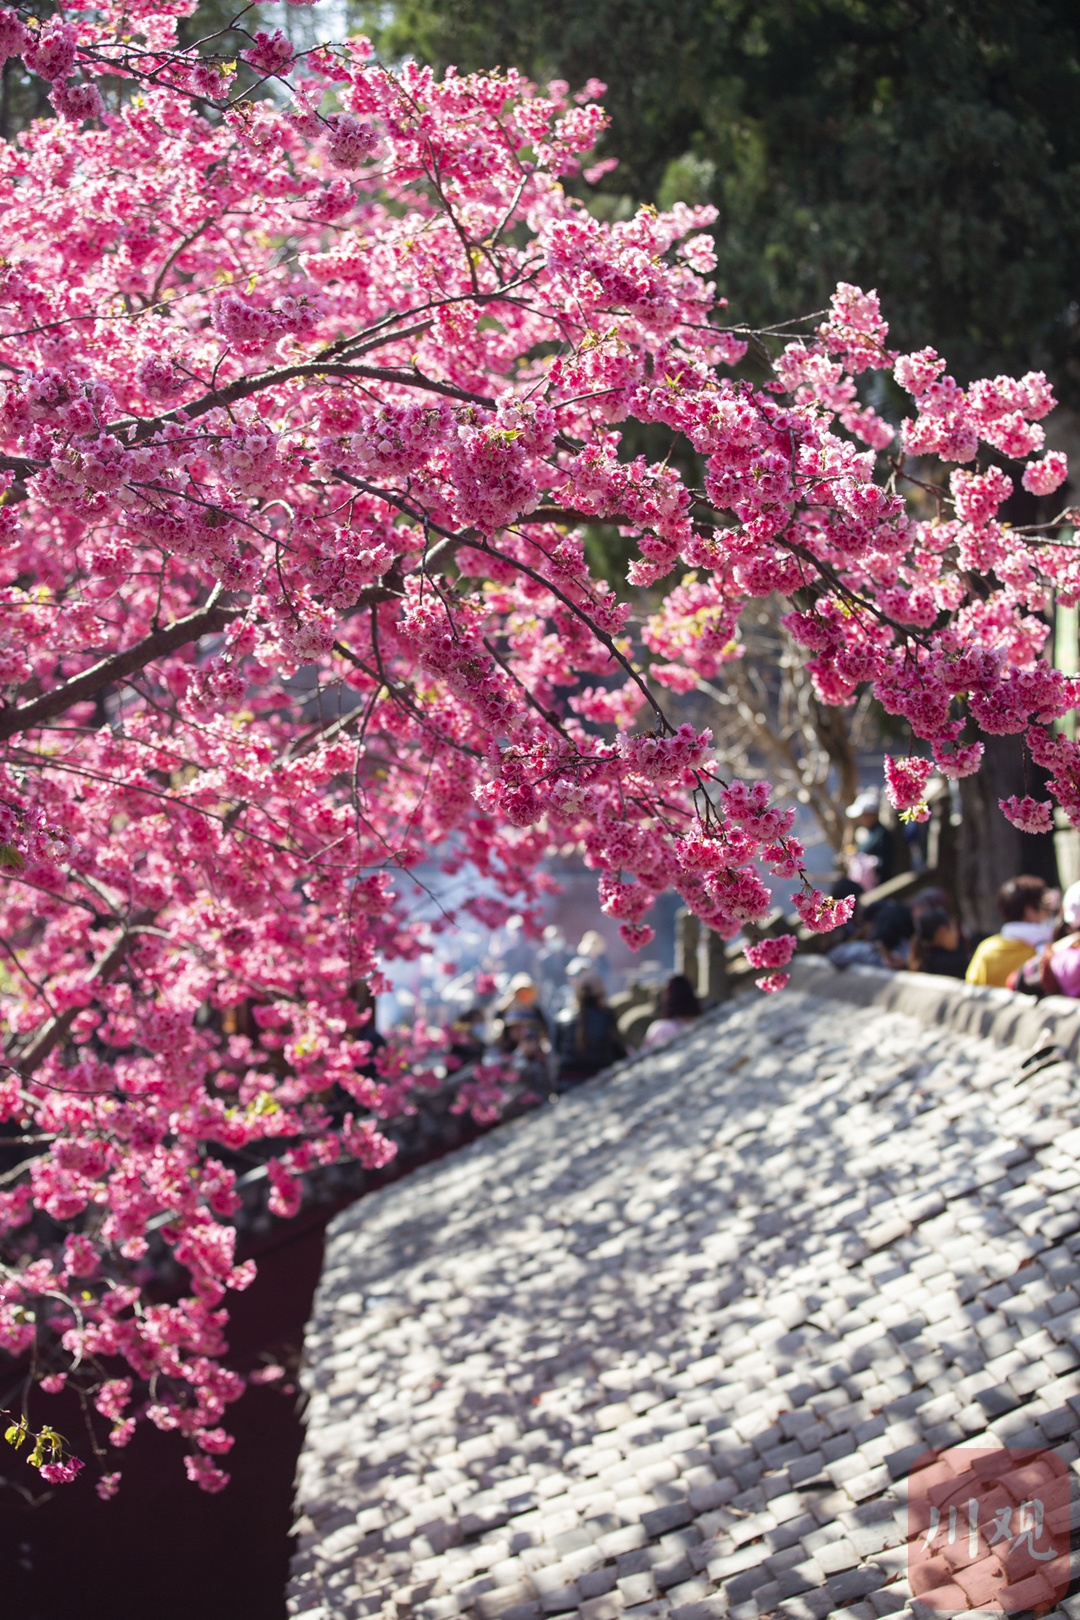 （转载）#你好·春天# 到千年古刹光福寺 听樱花盛开的声音